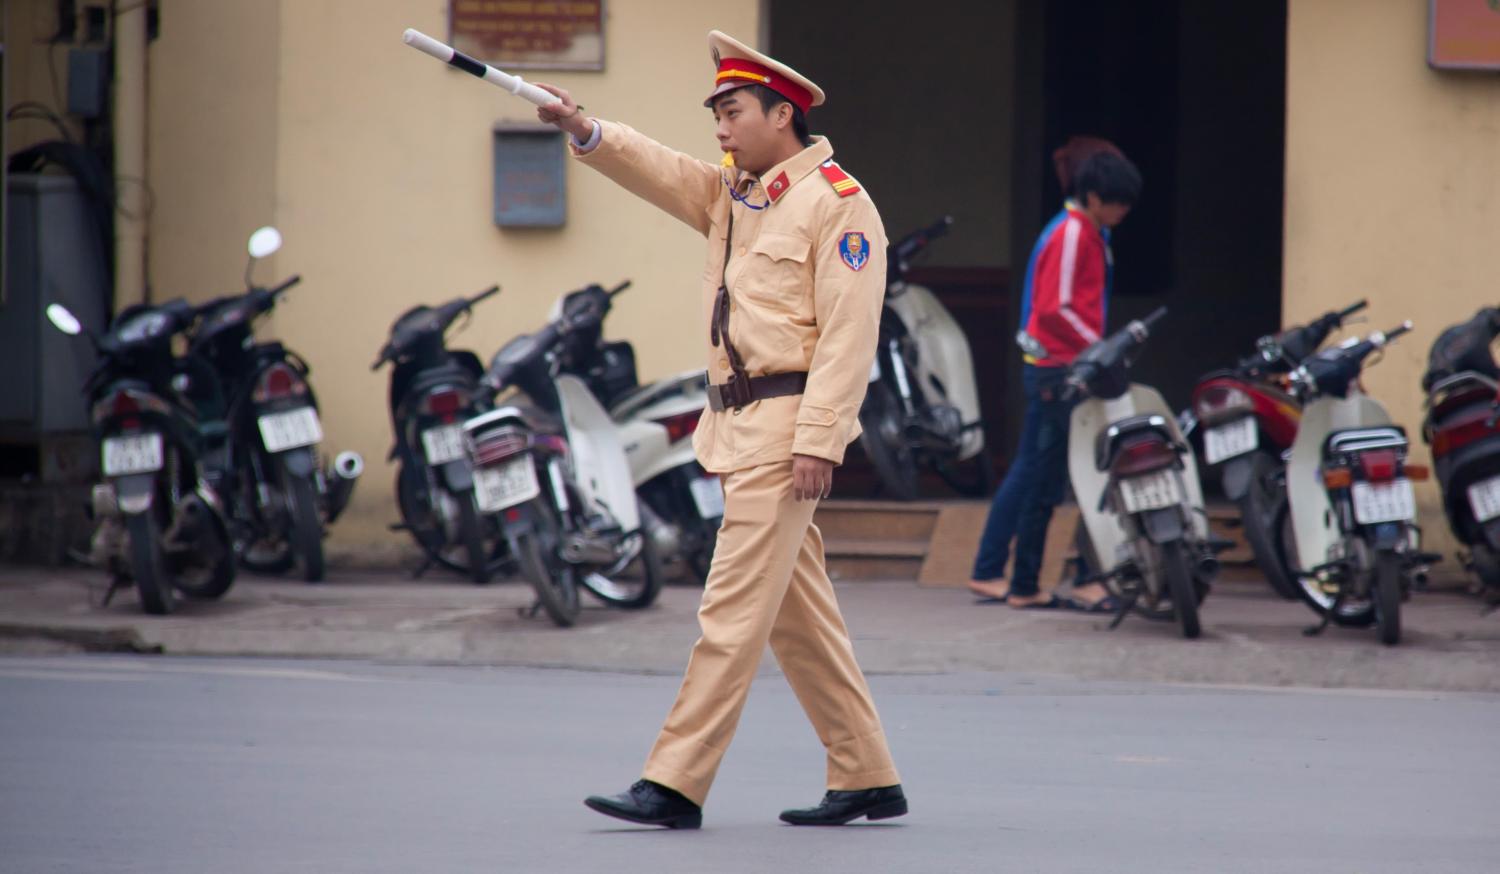 Police officer in Hanoi (Photo: Chris Goldberg/Flickr)